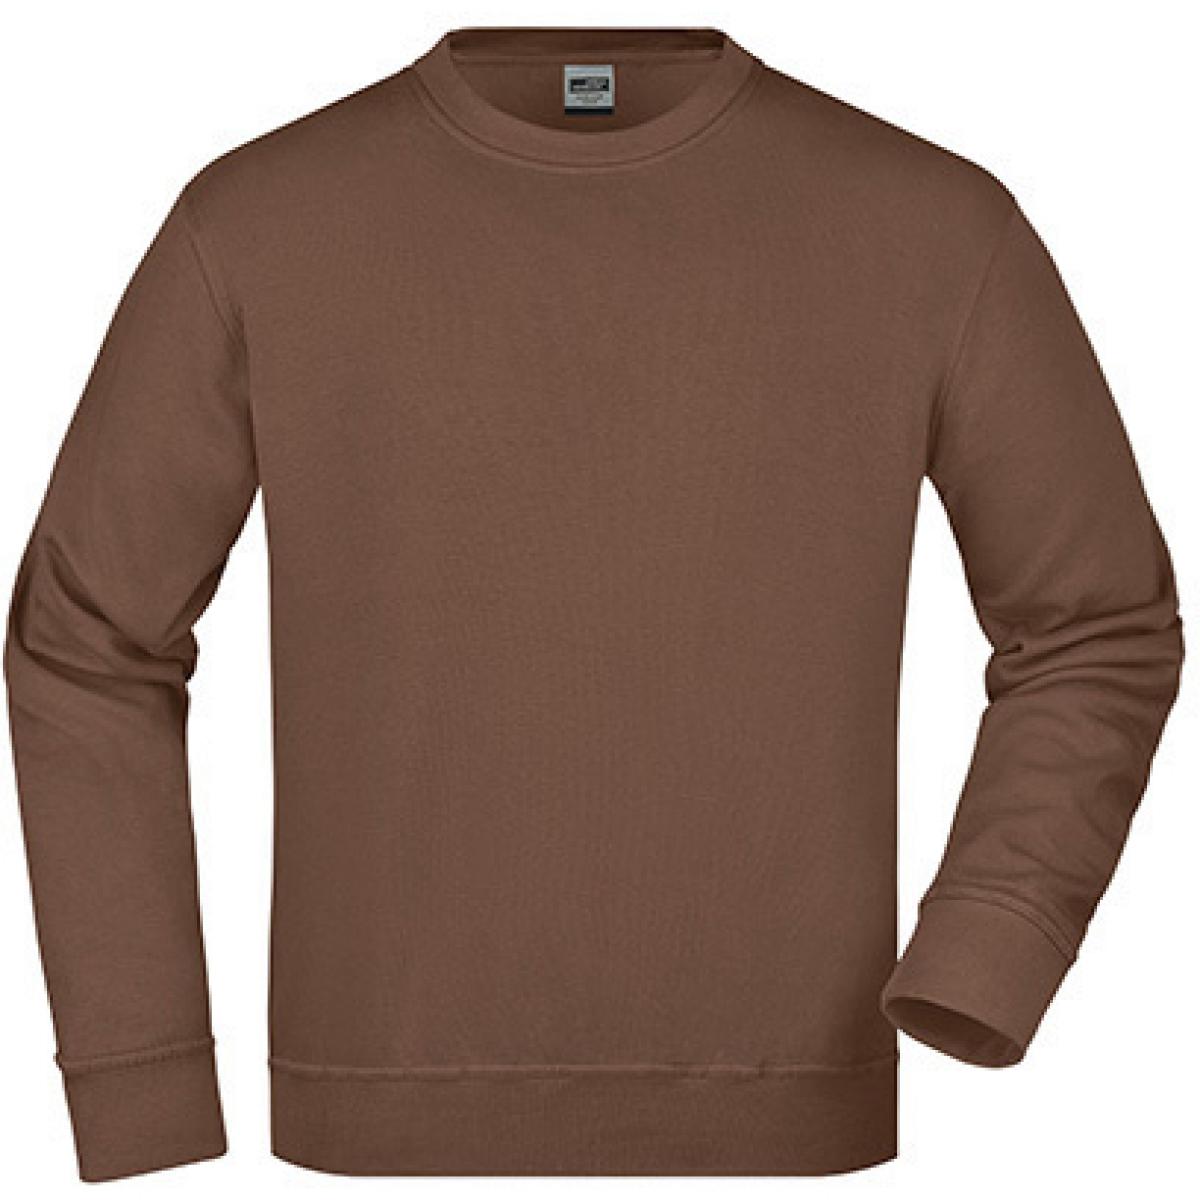 Hersteller: James+Nicholson Herstellernummer: JN840 Artikelbezeichnung: Workwear Sweatshirt / Waschbar bis 60C Farbe: Brown